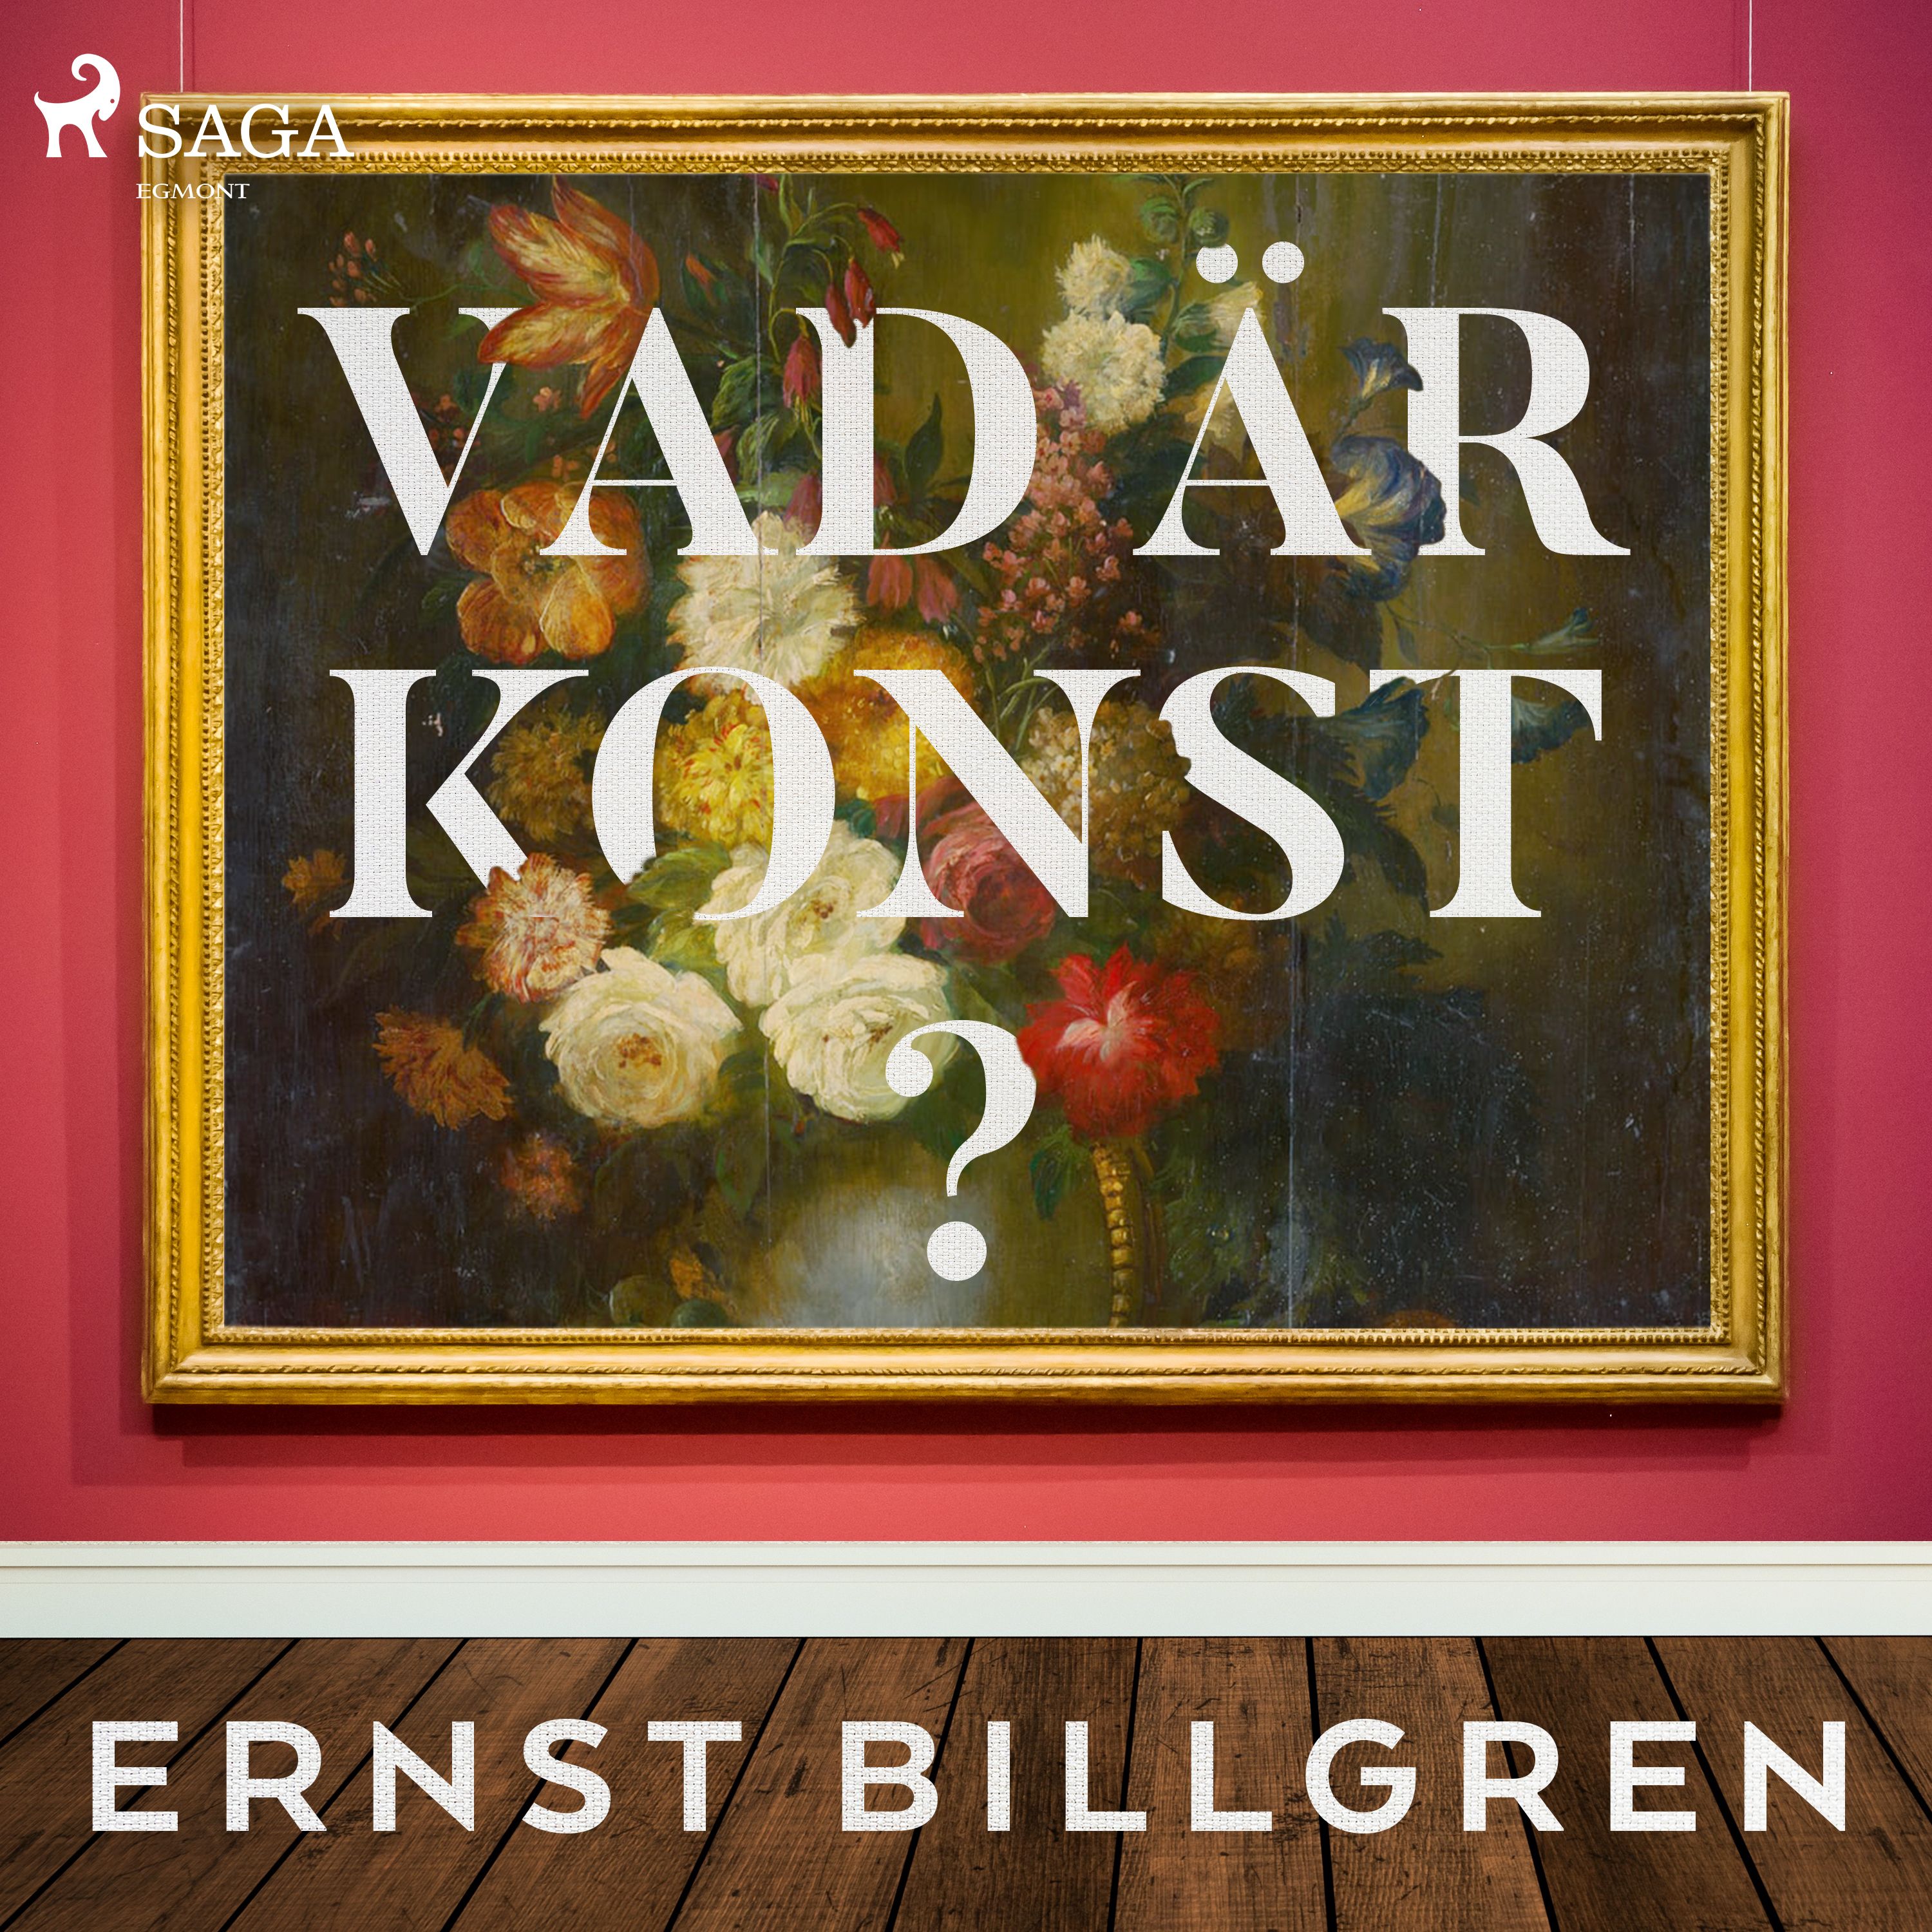 Vad är konst?, ljudbok av Ernst Billgren